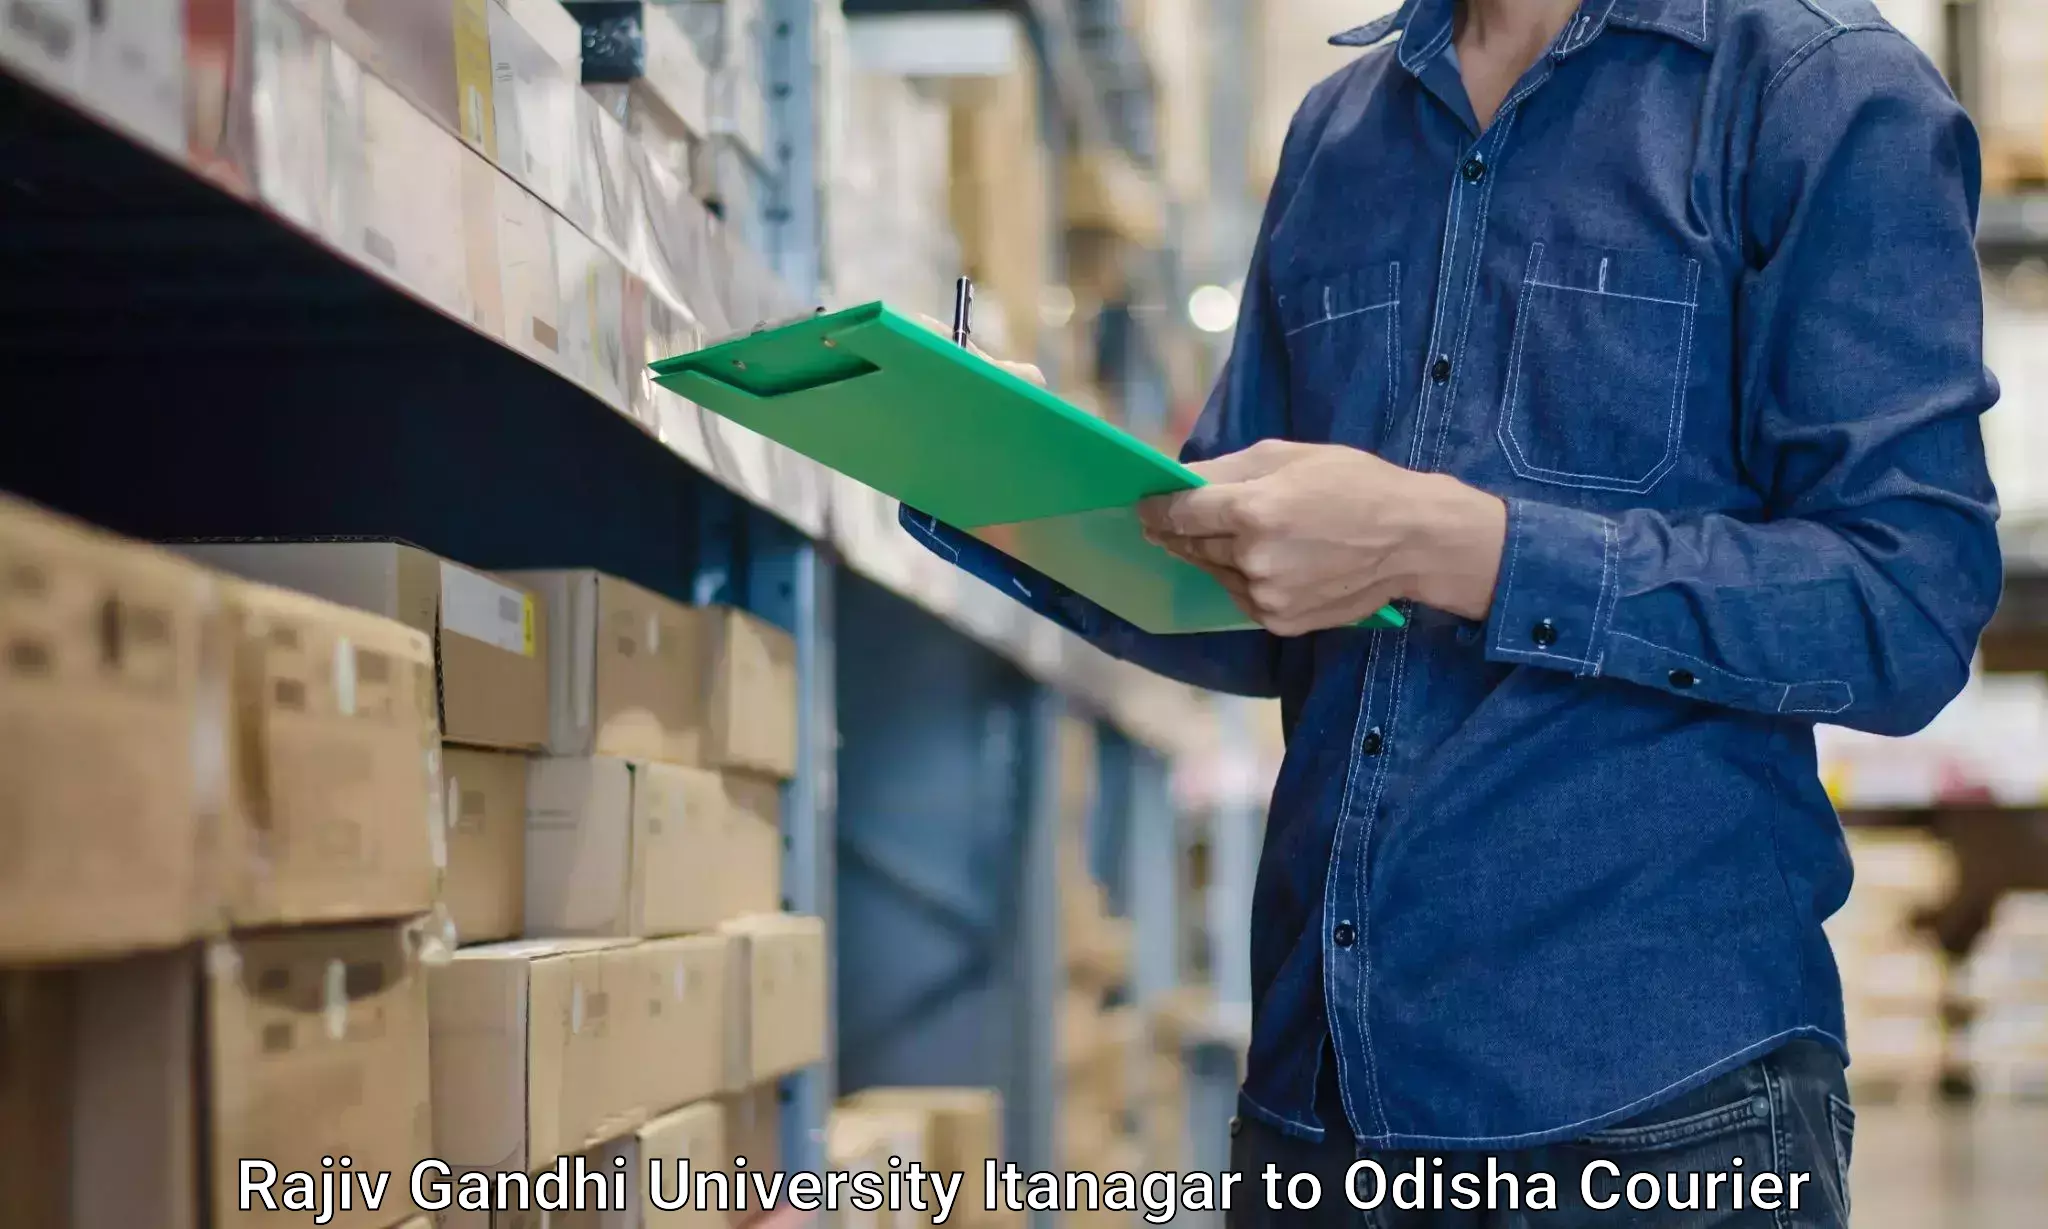 Furniture moving and handling Rajiv Gandhi University Itanagar to Sinapali